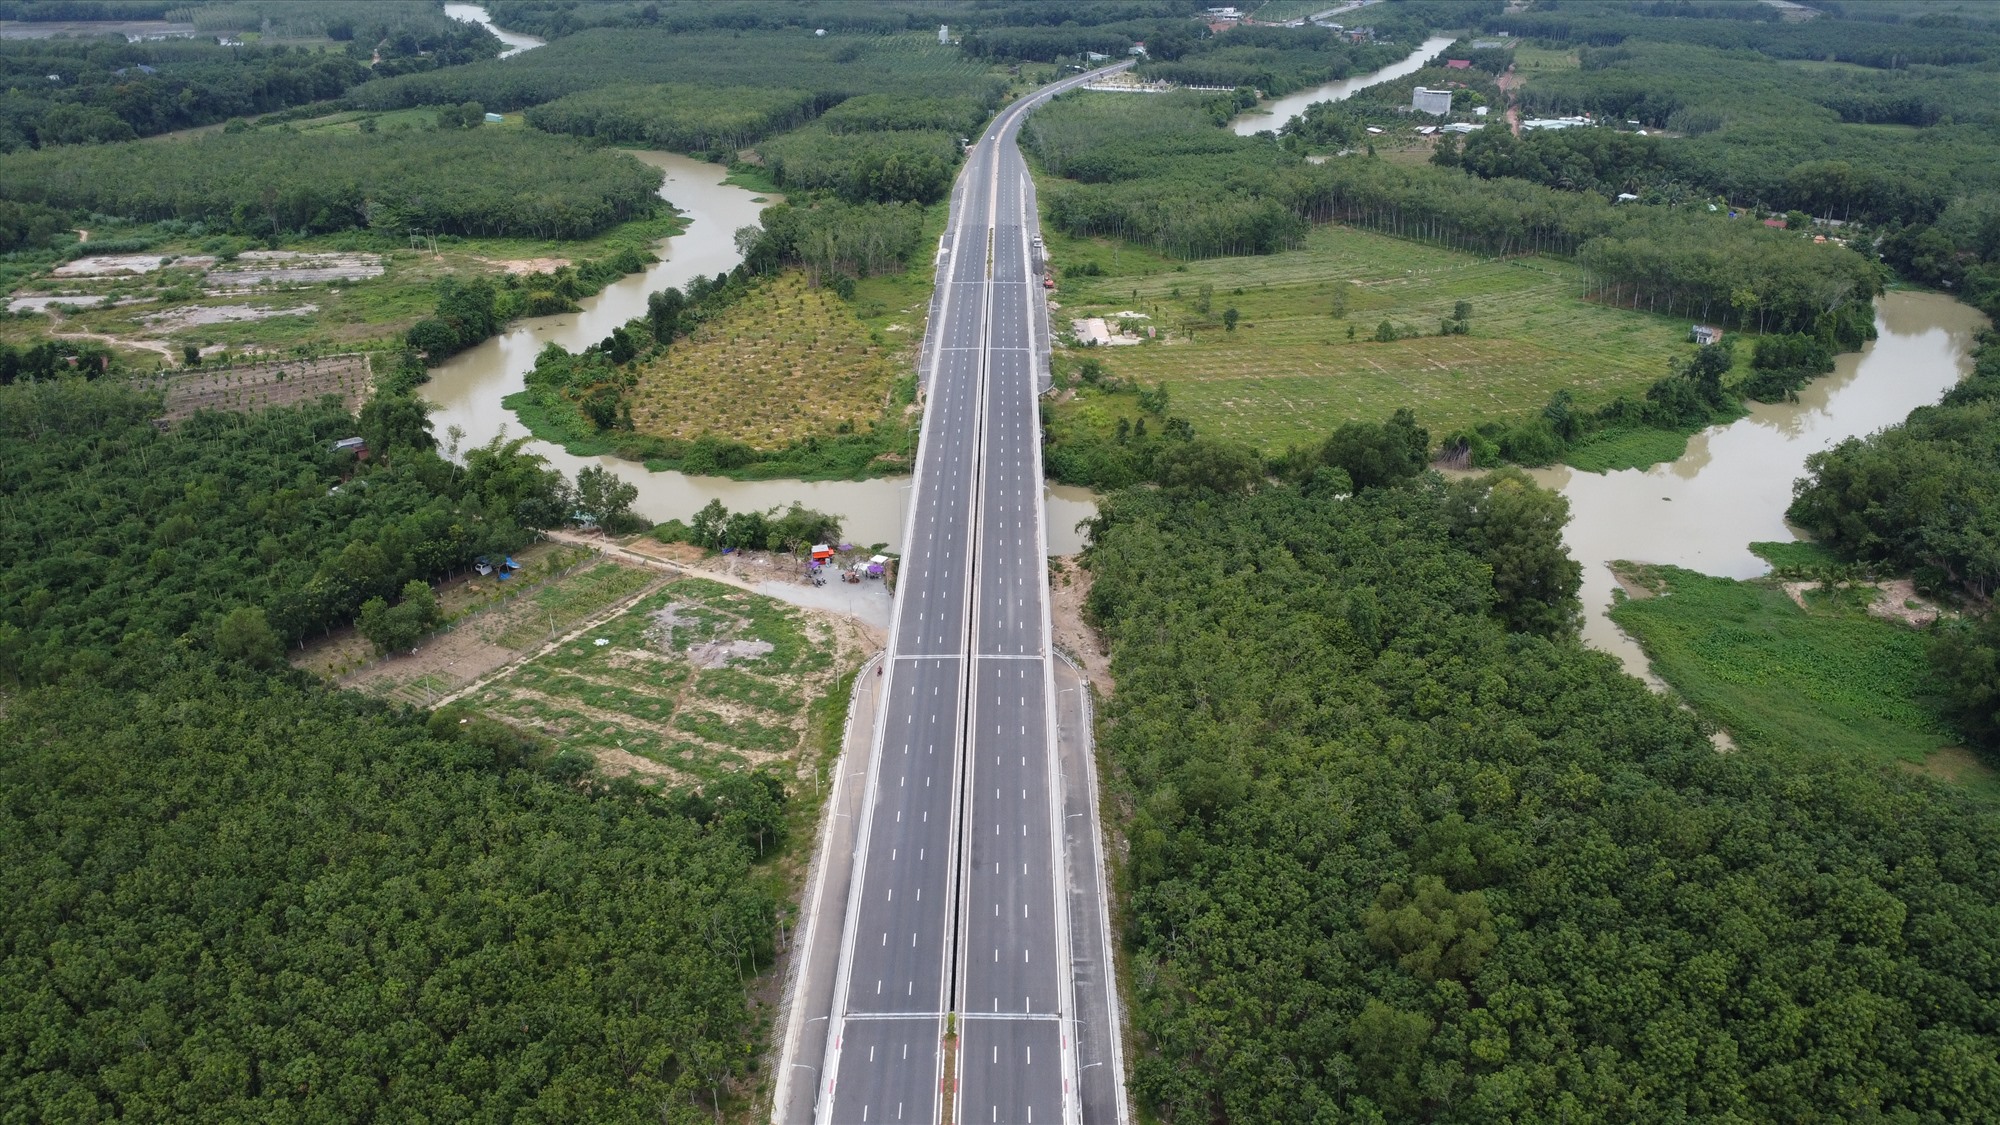 Đây là đường và cầu vượt sông Sài Gòn kết nối Bình Dương Tây Ninh. Điểm đầu của dự án giao với đường ĐT.744, thuộc khu phố 6 thi trấn Dầu Tiếng, tỉnh Bình Dương. Điểm cuối đấu nối vào dự án Đường Đất Sét-Bến Củi do phía Tây Ninh